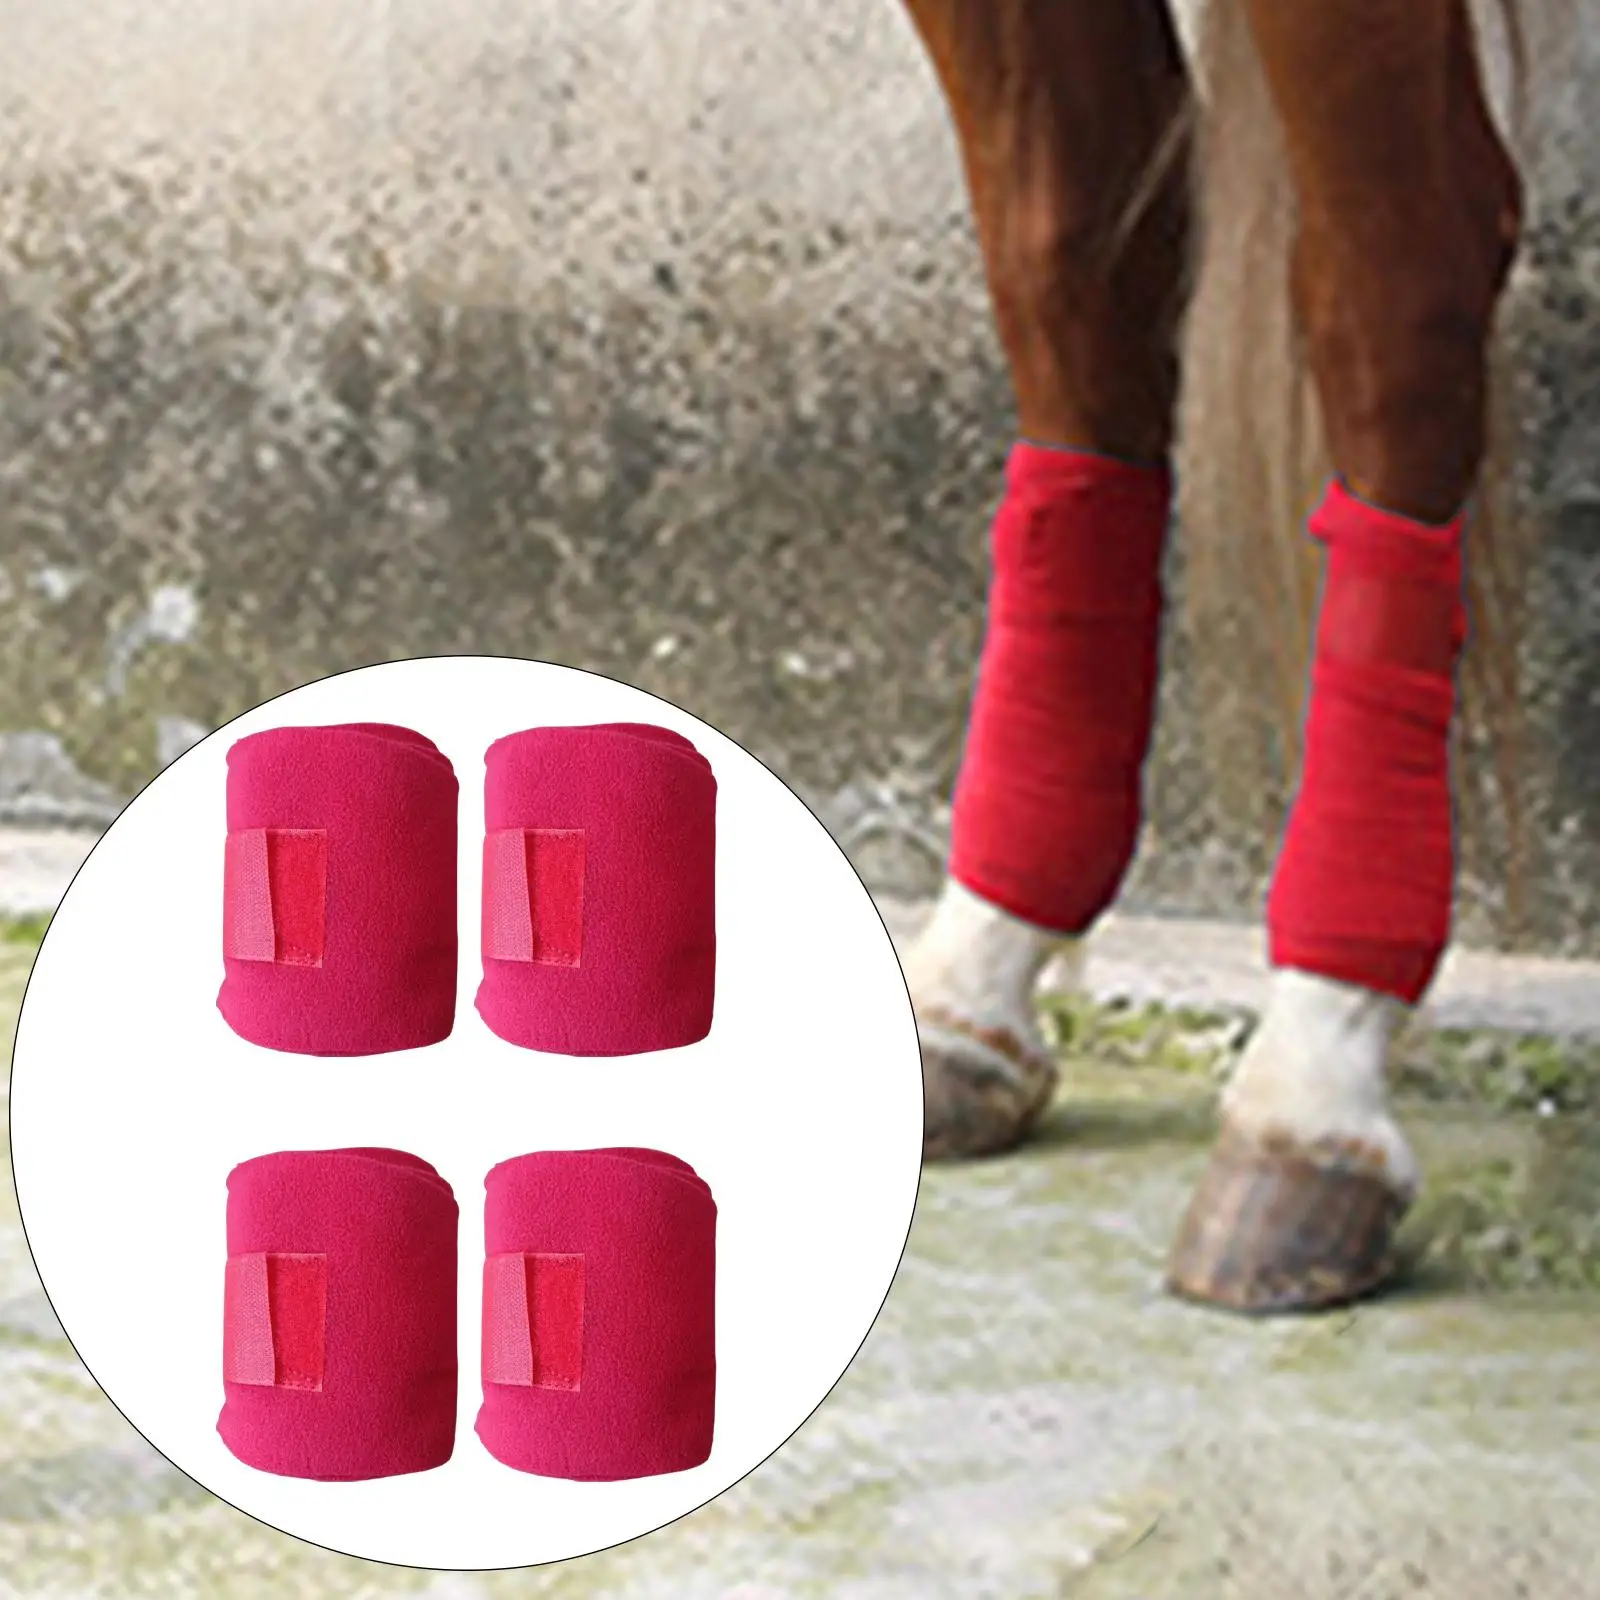 4Pcs Horse Leg Wraps, Soft Plush Horse Splint Support Riding Leg Protection Wraps, Leg Guards Bandages Equestrian Equipment Red